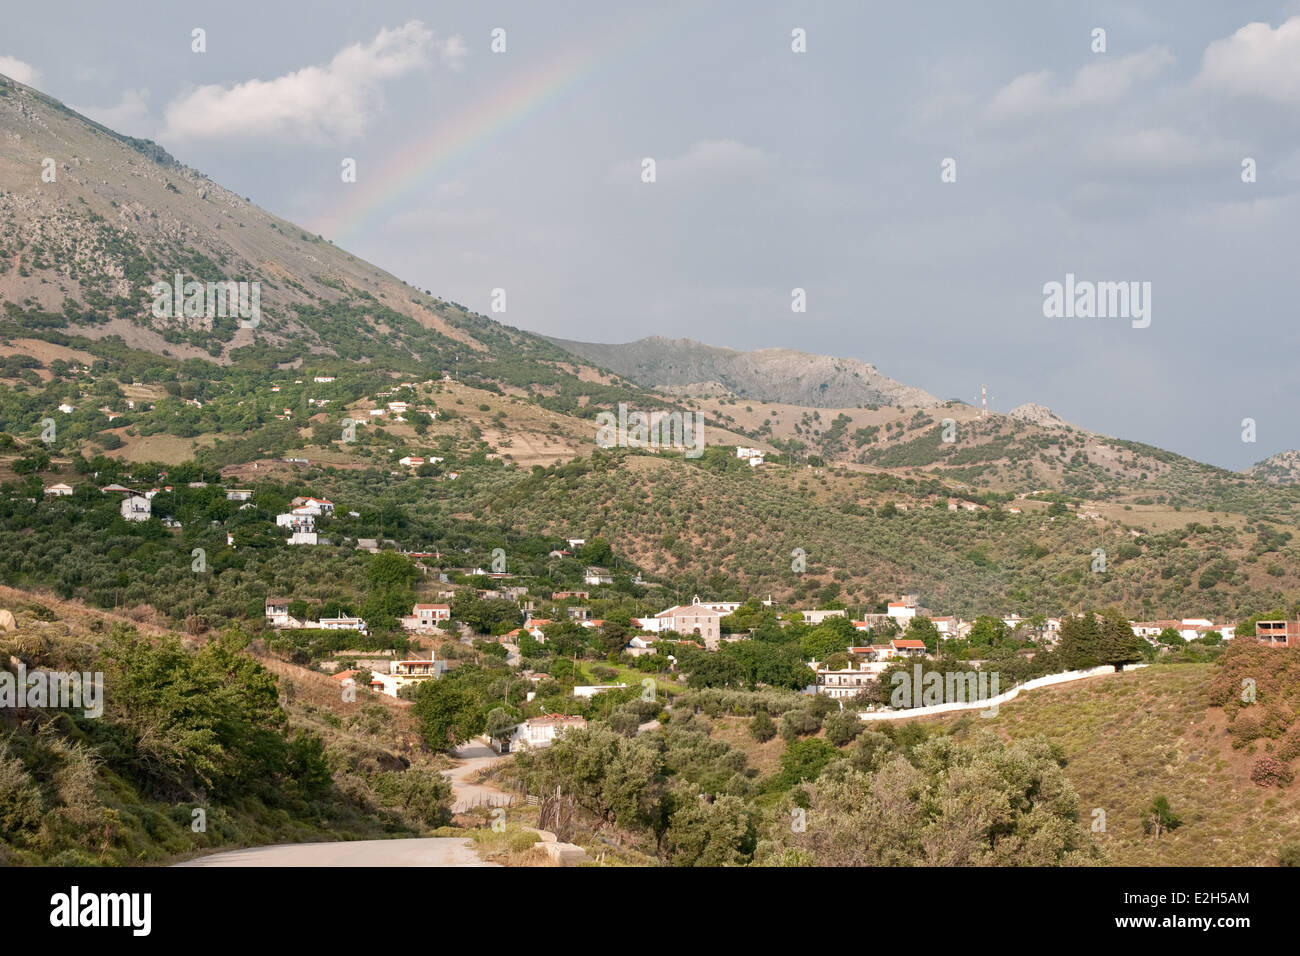 Un arc-en-ciel clair apparaît au-dessus du village de Profitis Ilias, sur l'île grecque du nord de Samothraki, Thrace, Grèce Banque D'Images